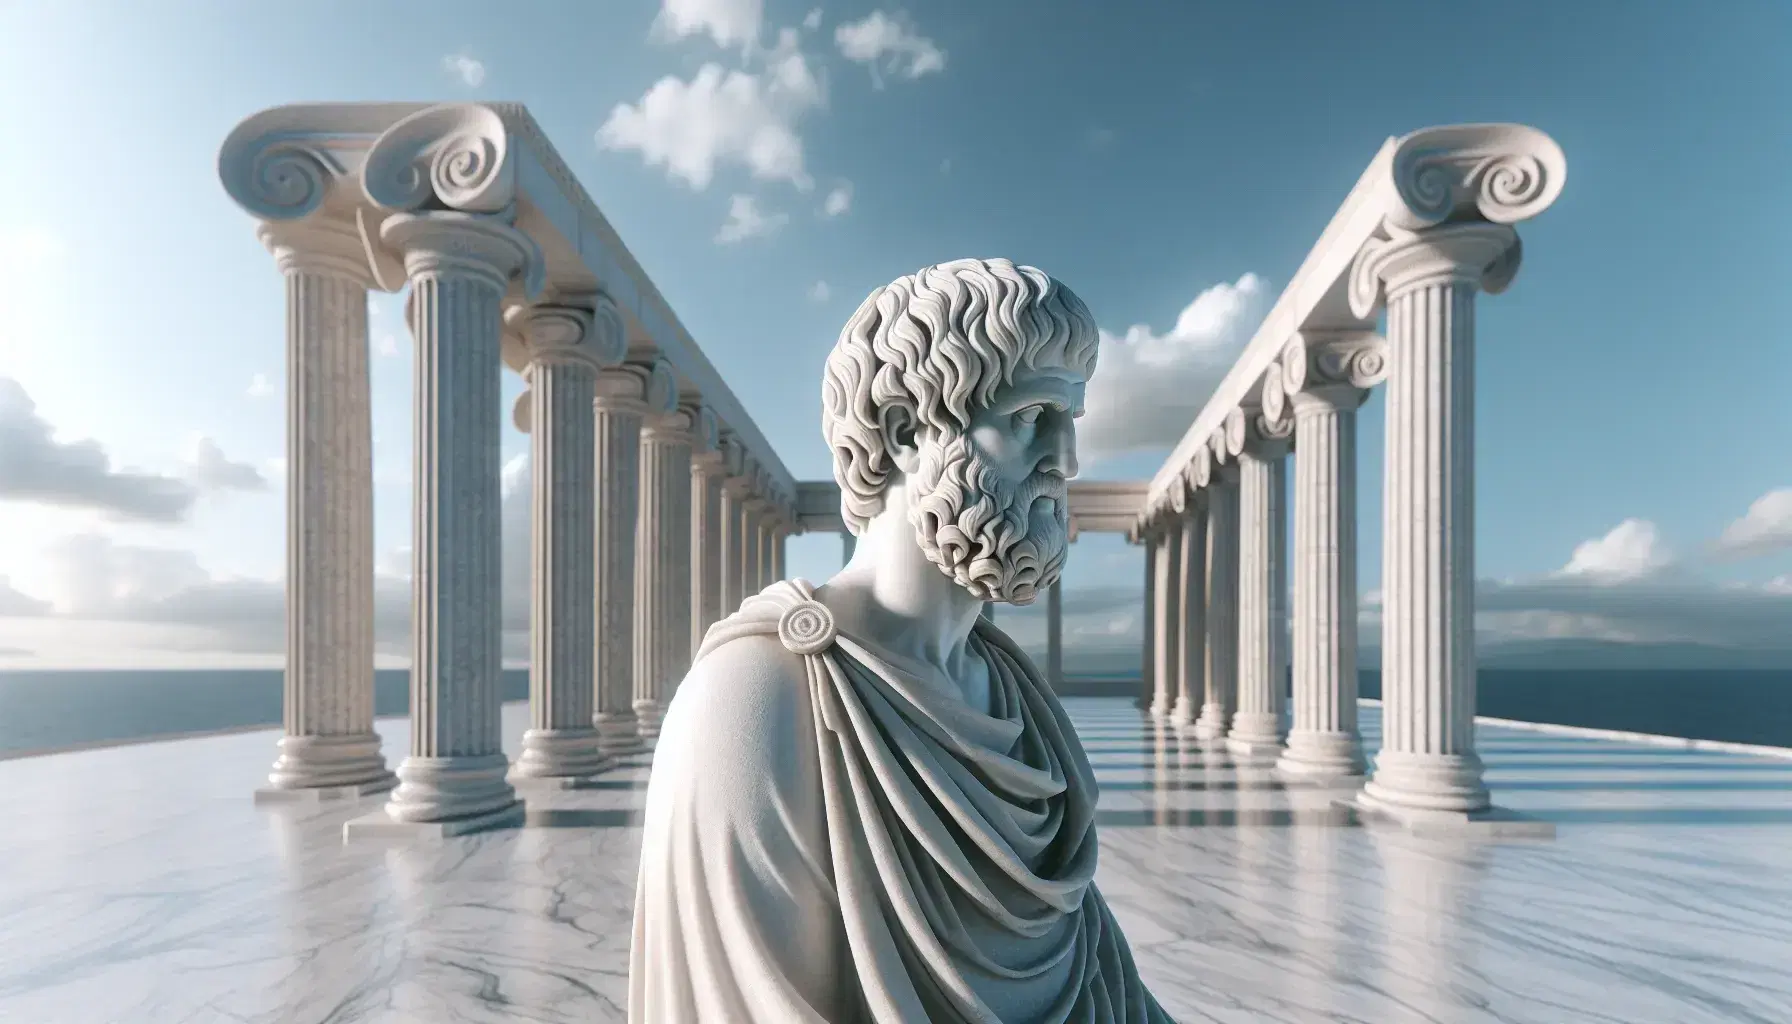 Estatua de mármol blanco de Aristóteles con túnica, frente a columnas dóricas y cielo azul, reflejando la arquitectura clásica griega.